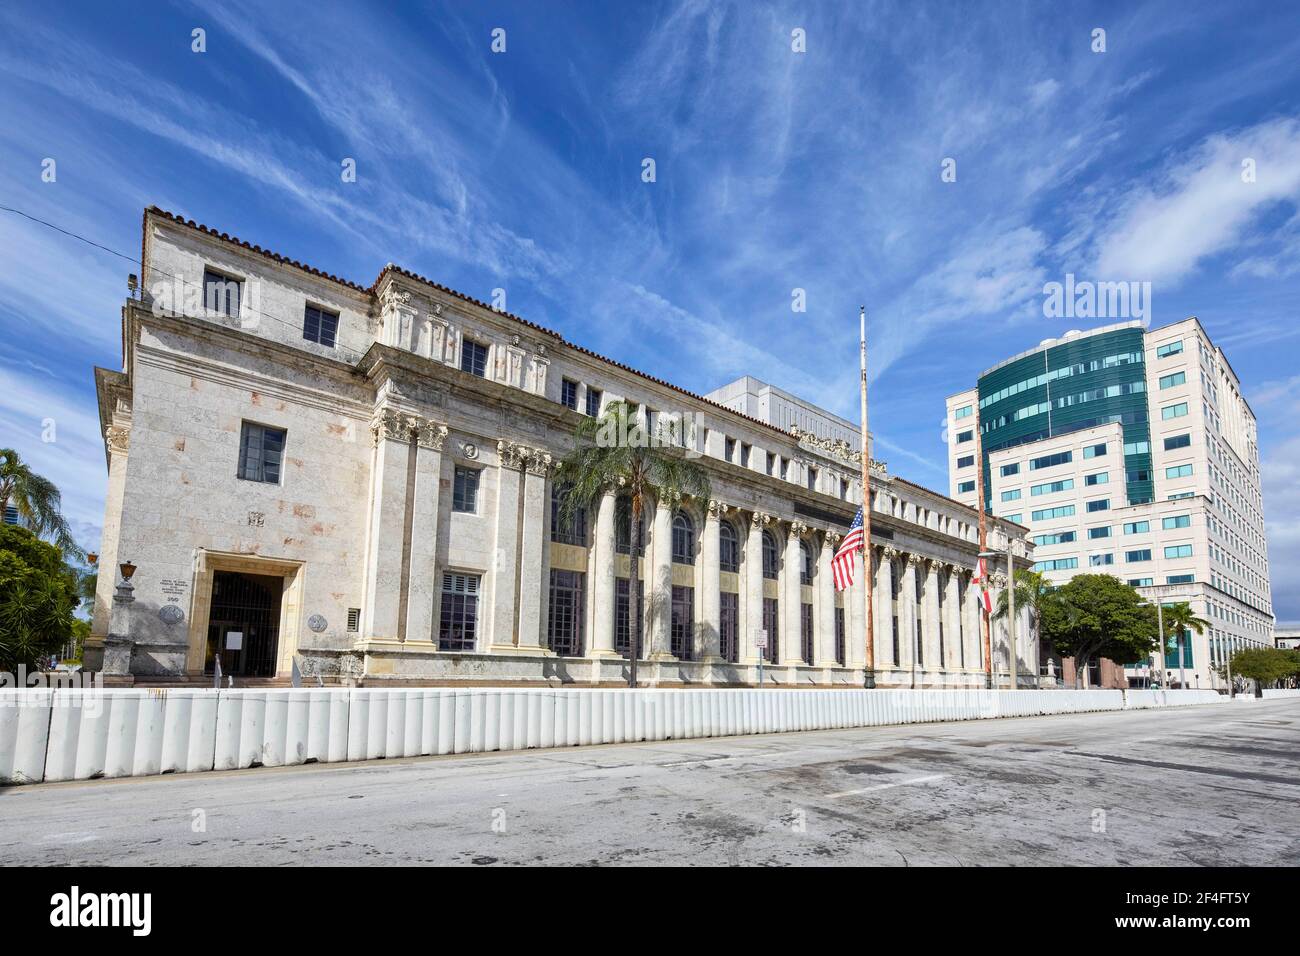 David W Dyer, edificio federale e tribunale degli Stati Uniti progettati Di Carrere & Hastings Studio architettonico a Miami Florida USA Foto Stock